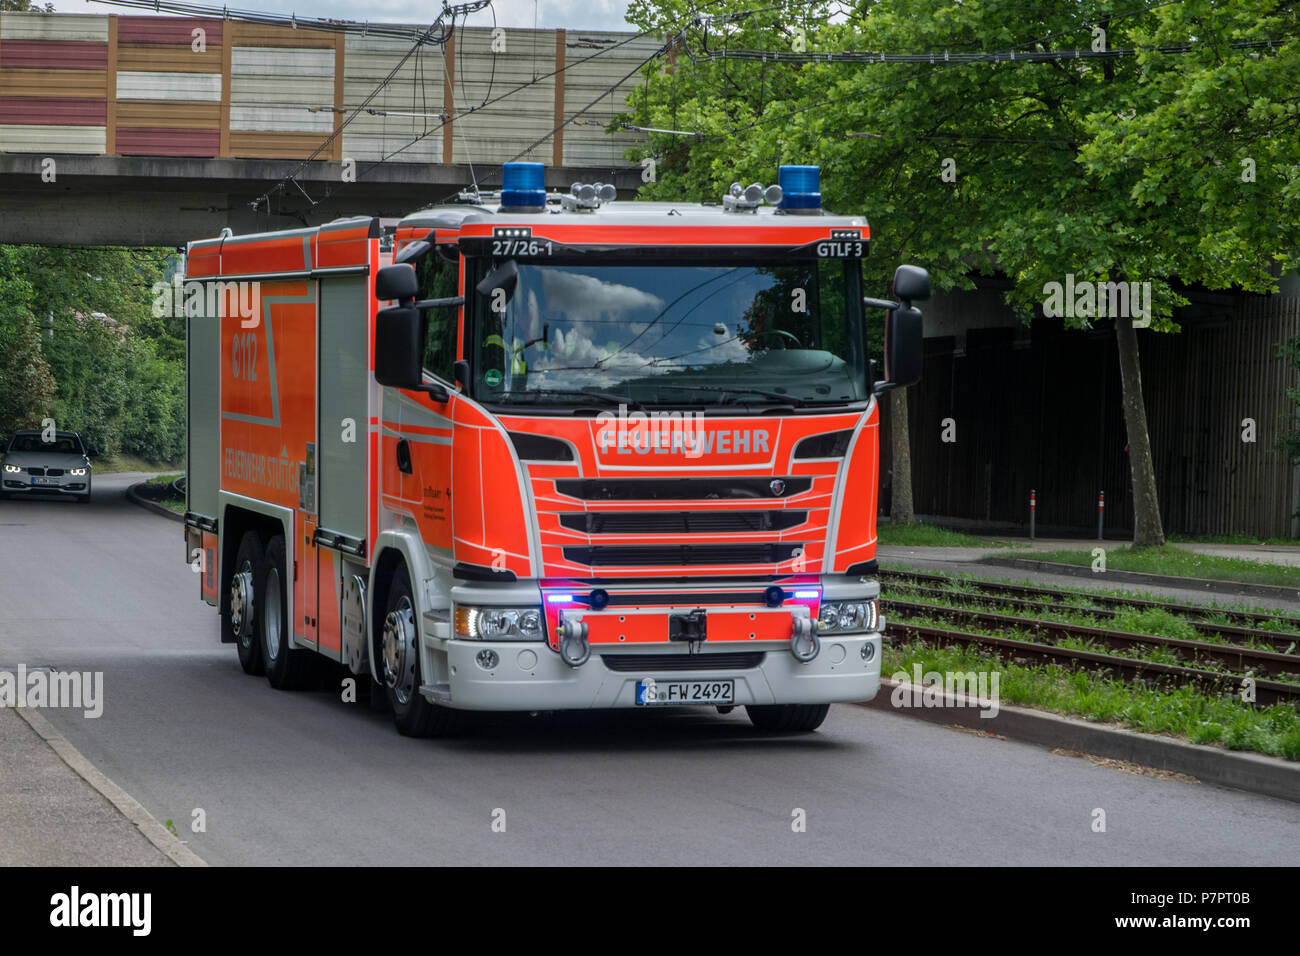 Schauübung der Jugendfeuerwehr der Freiwilligen Feuerwehr Stuttgart-Stammheim am Tag der offenen Tür, Deutschland Stock Photo